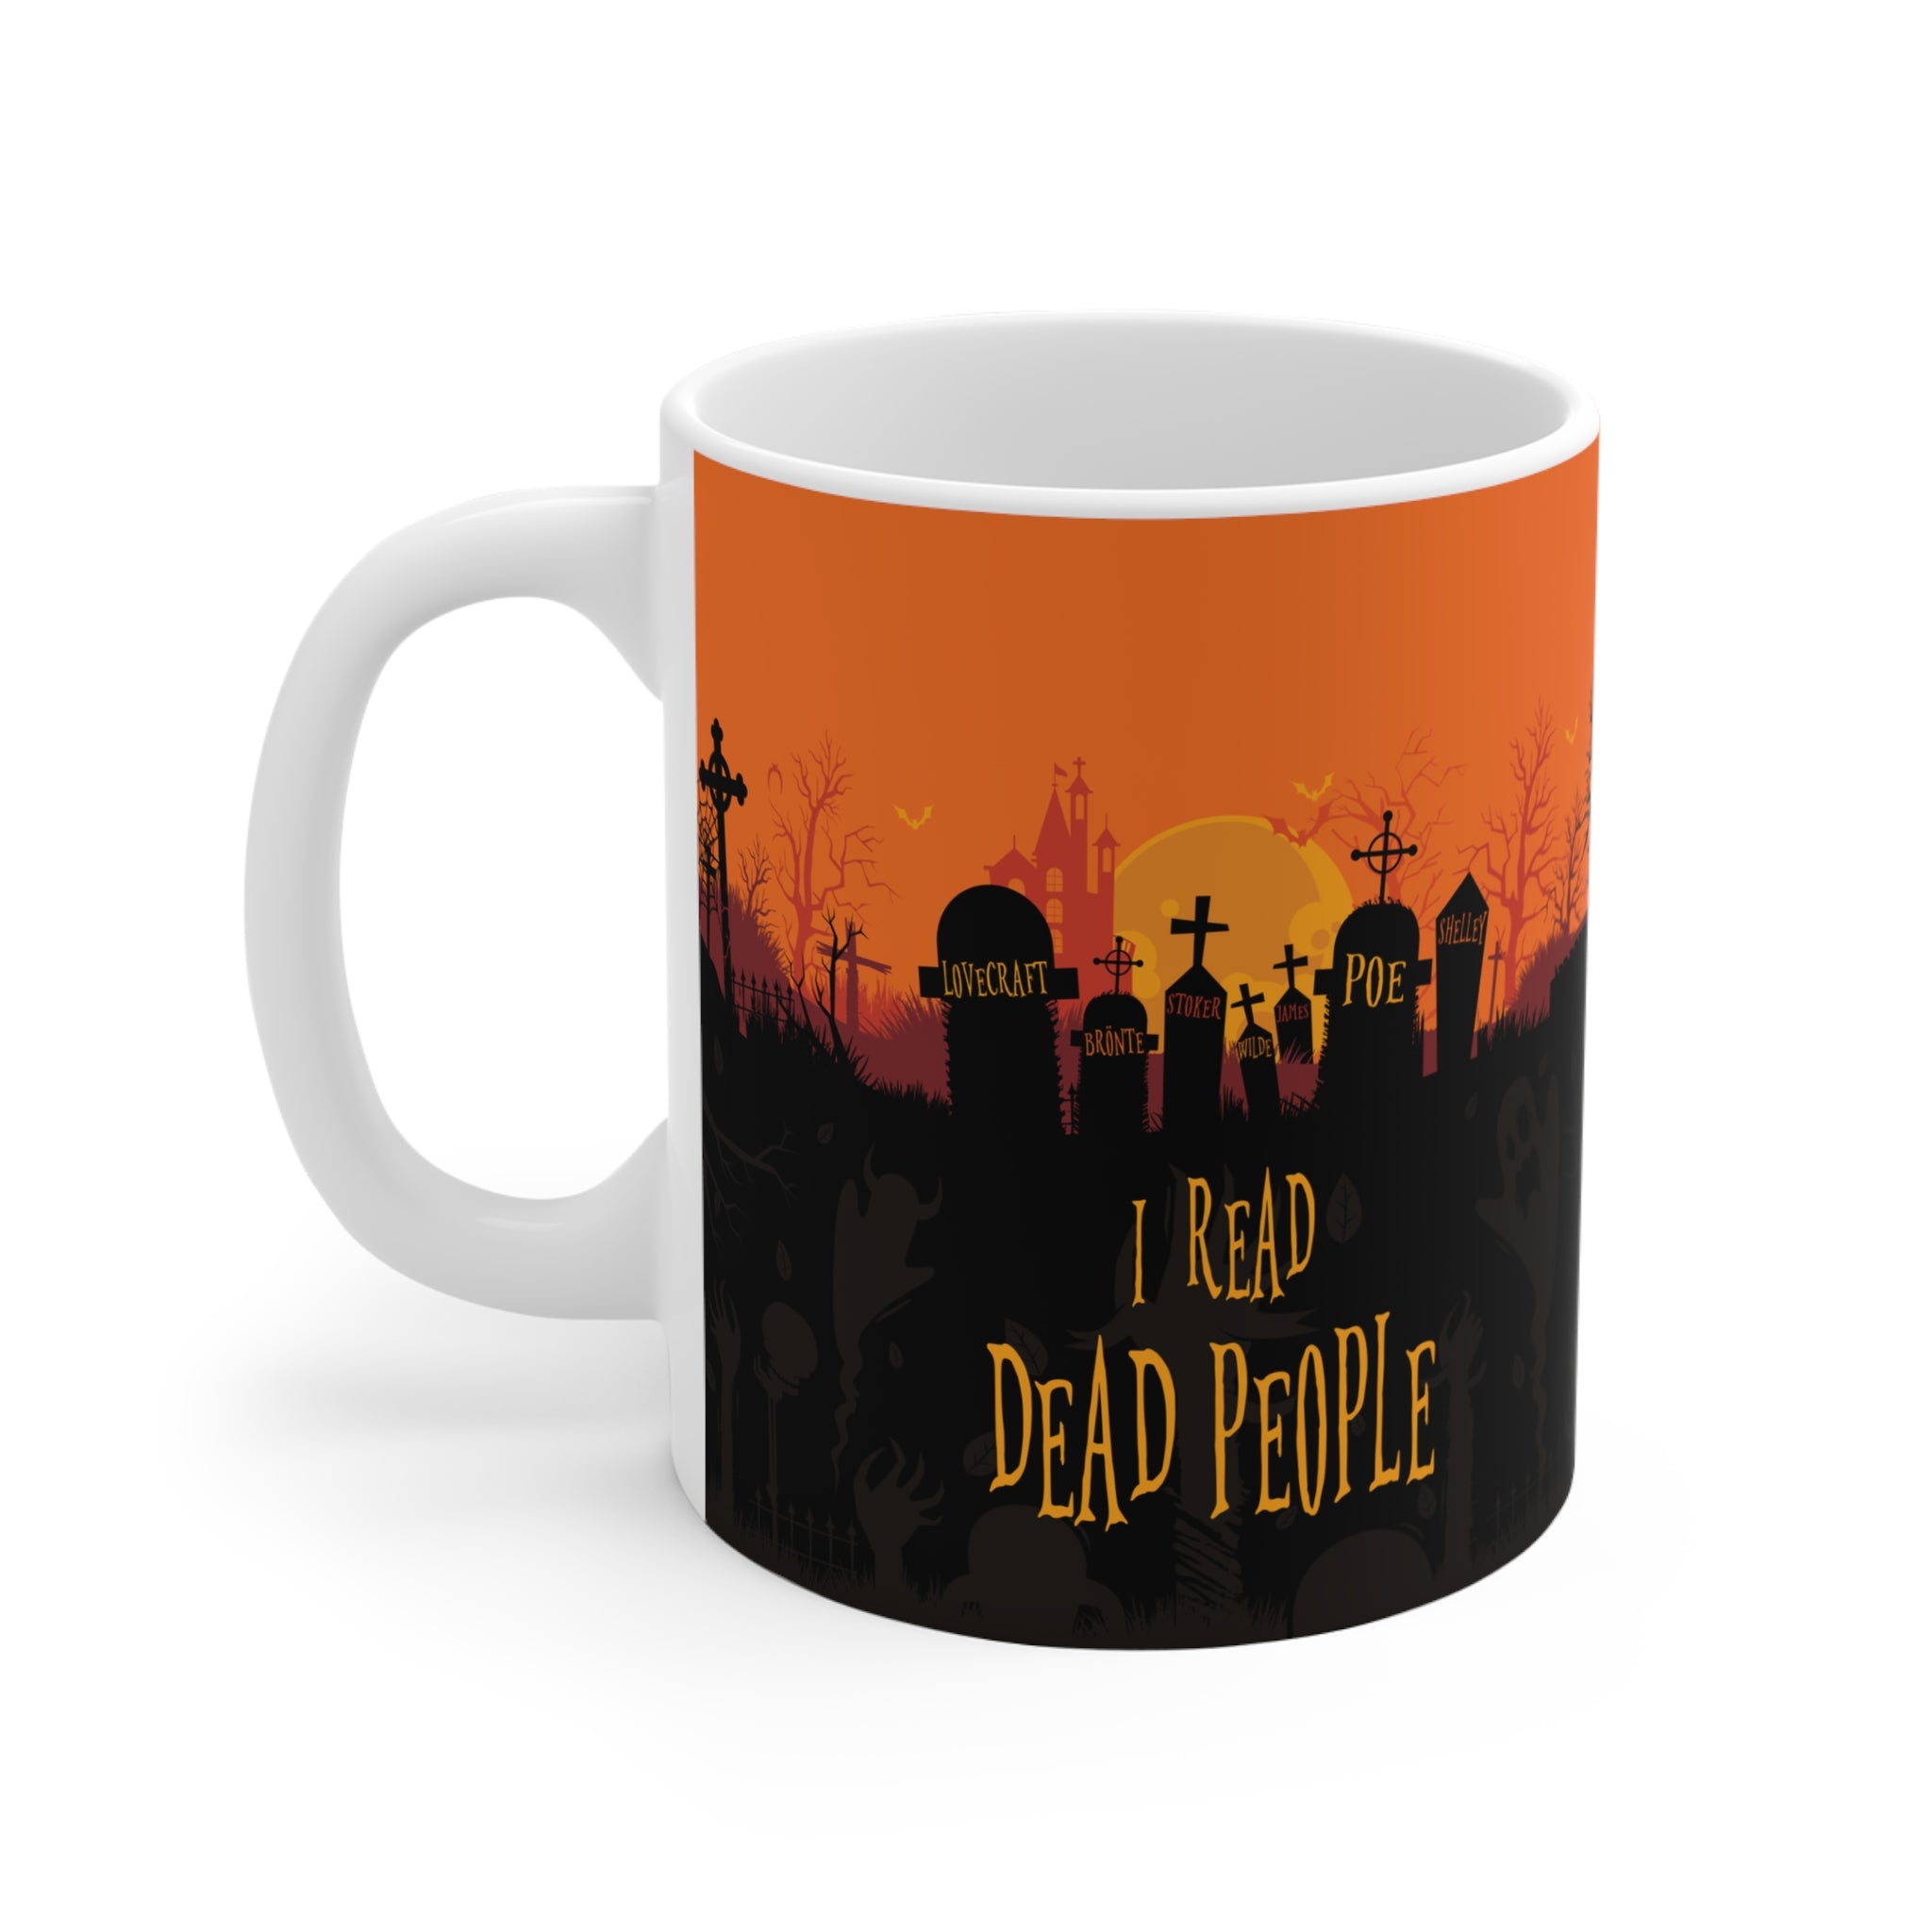 I READ DEAD PEOPLE Mug